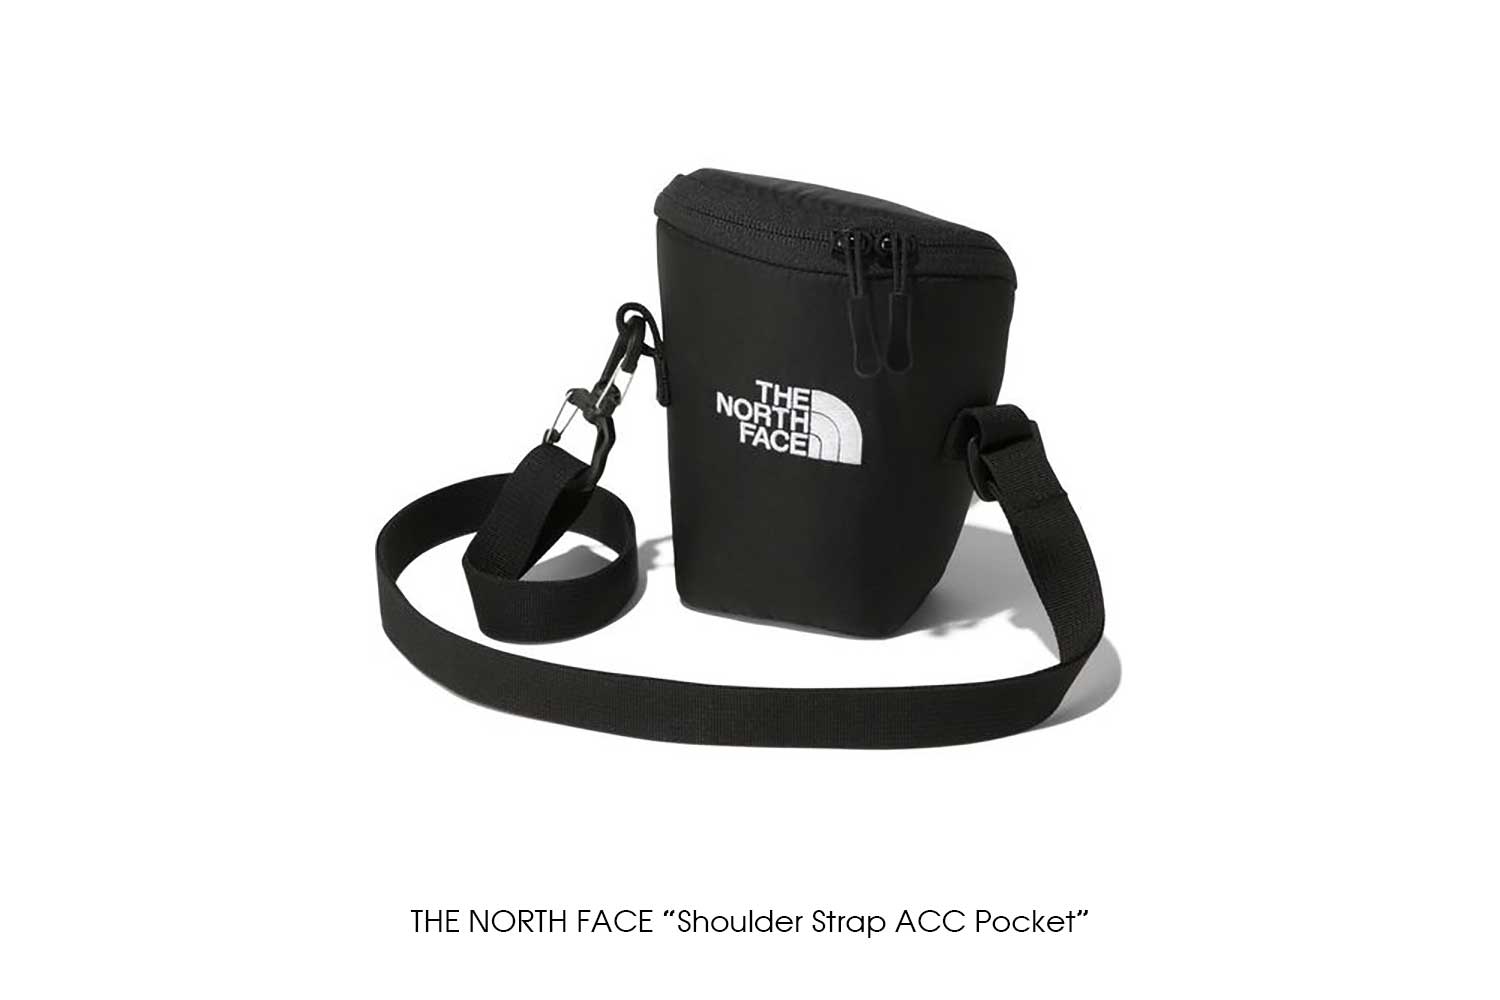 THE NORTH FACE "Shoulder Strap ACC Pocket"